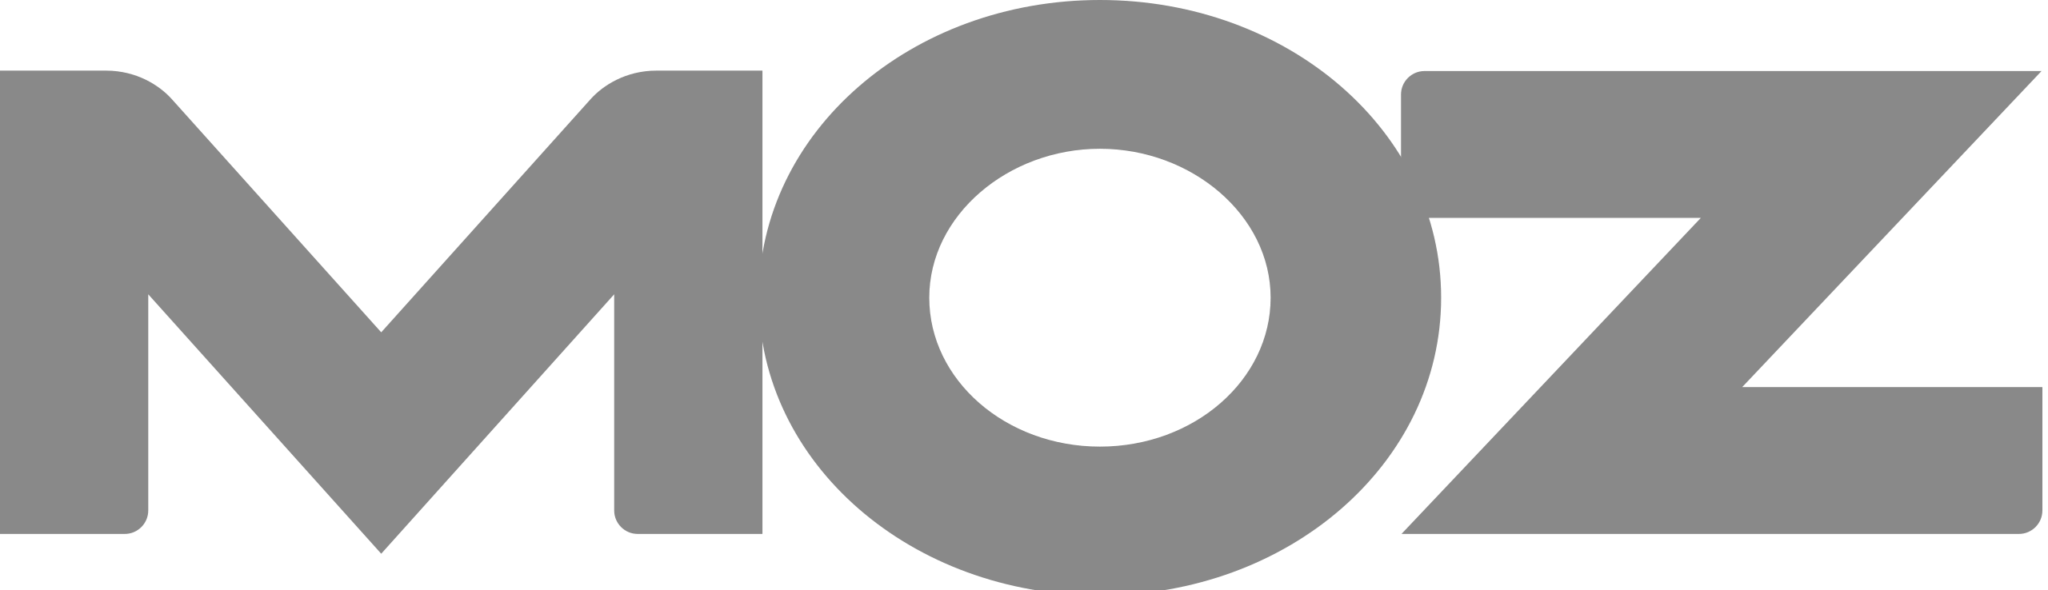 Moz Logo-B&W